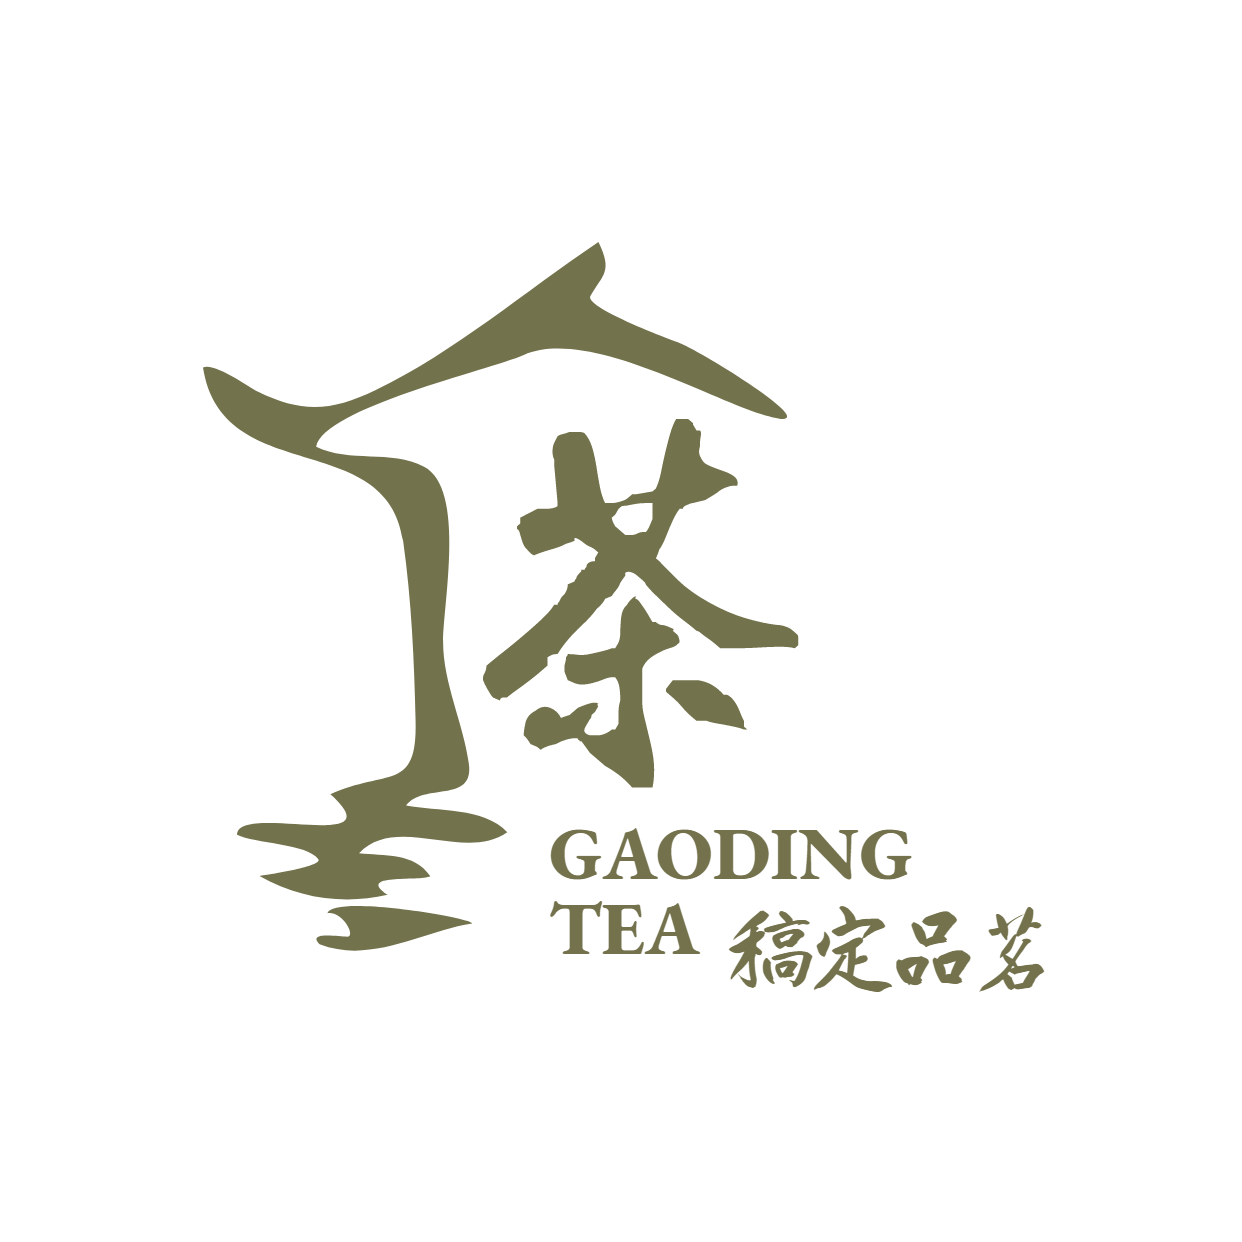 门店茶叶销售简约图形logo